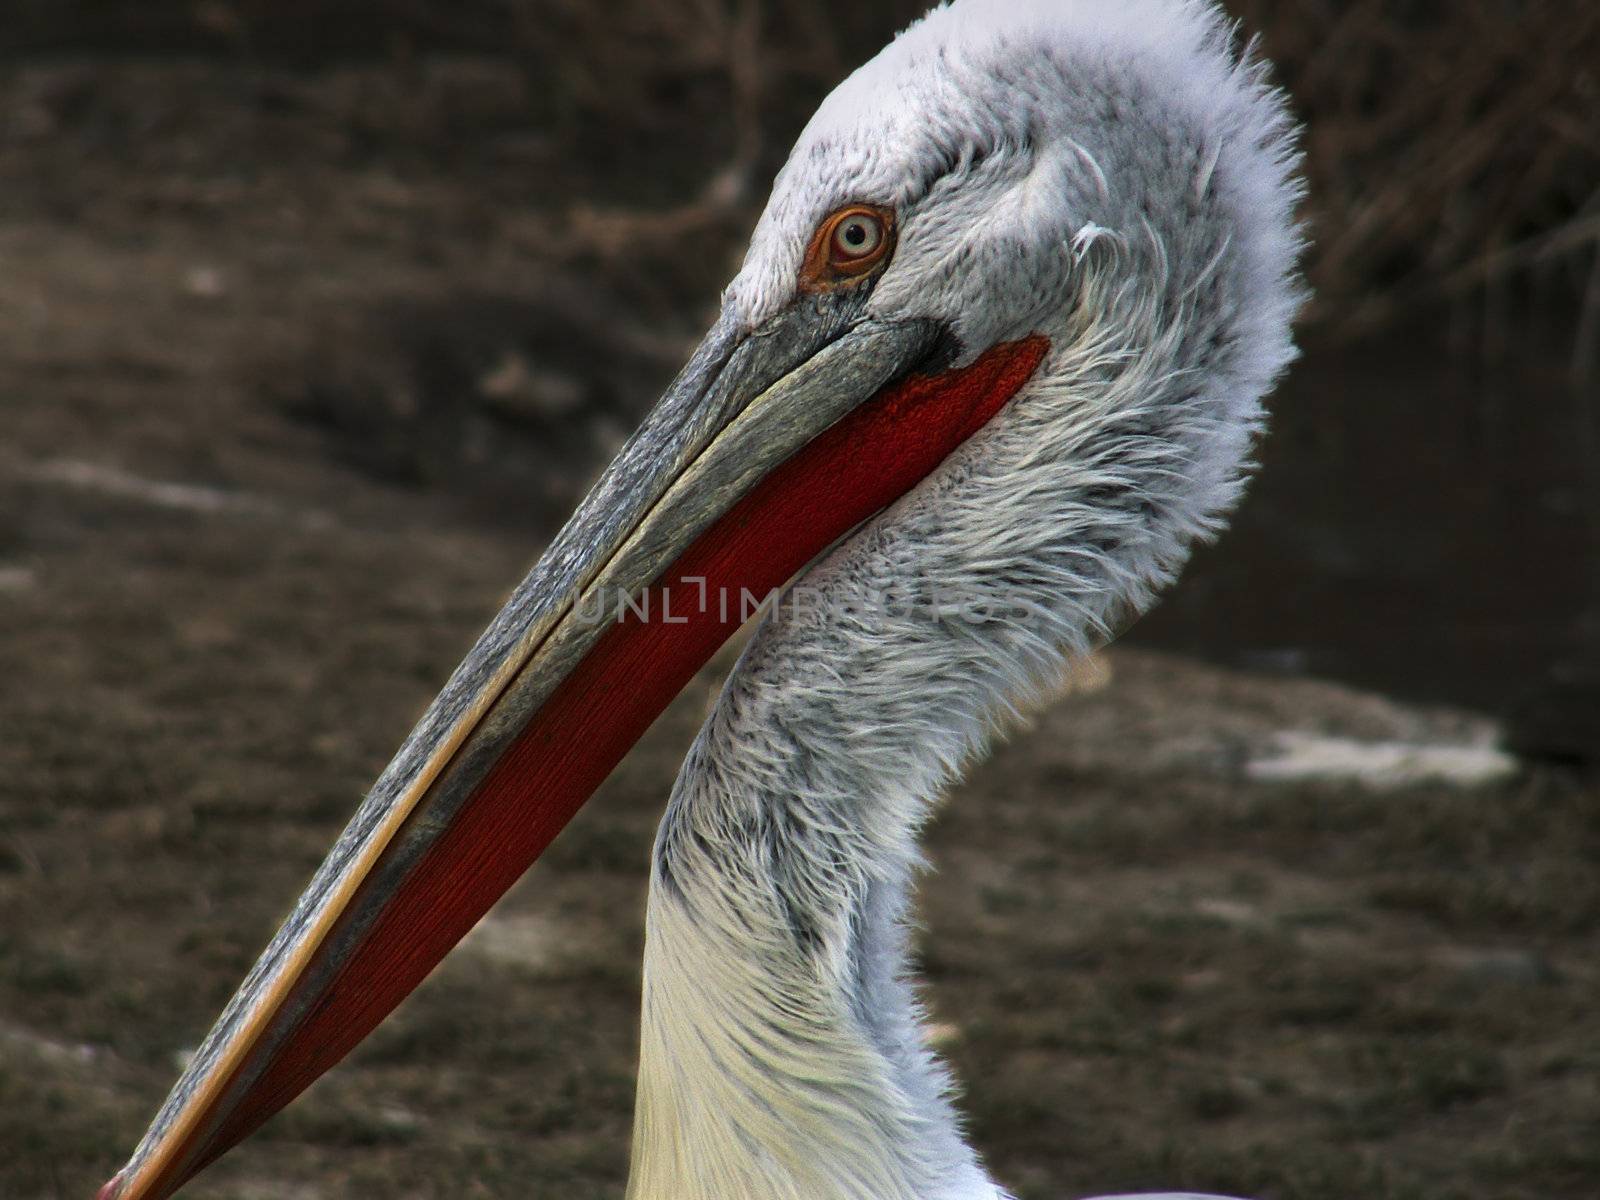 pelacanus - pelican by sarkao